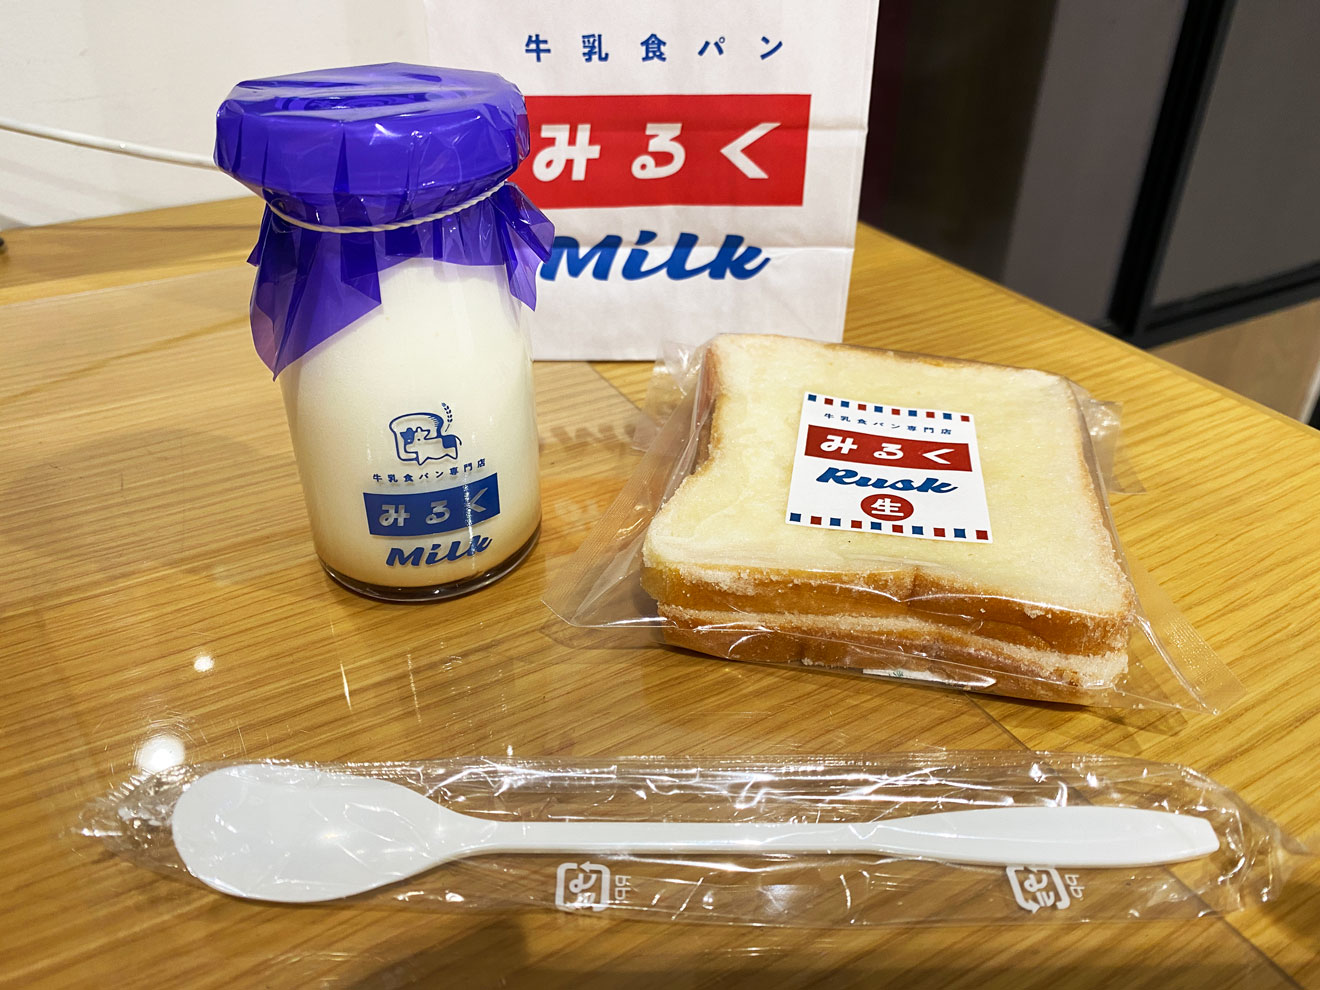 「牛乳食パン専門店 みるく」のみるくプリンとみるく生ラスク